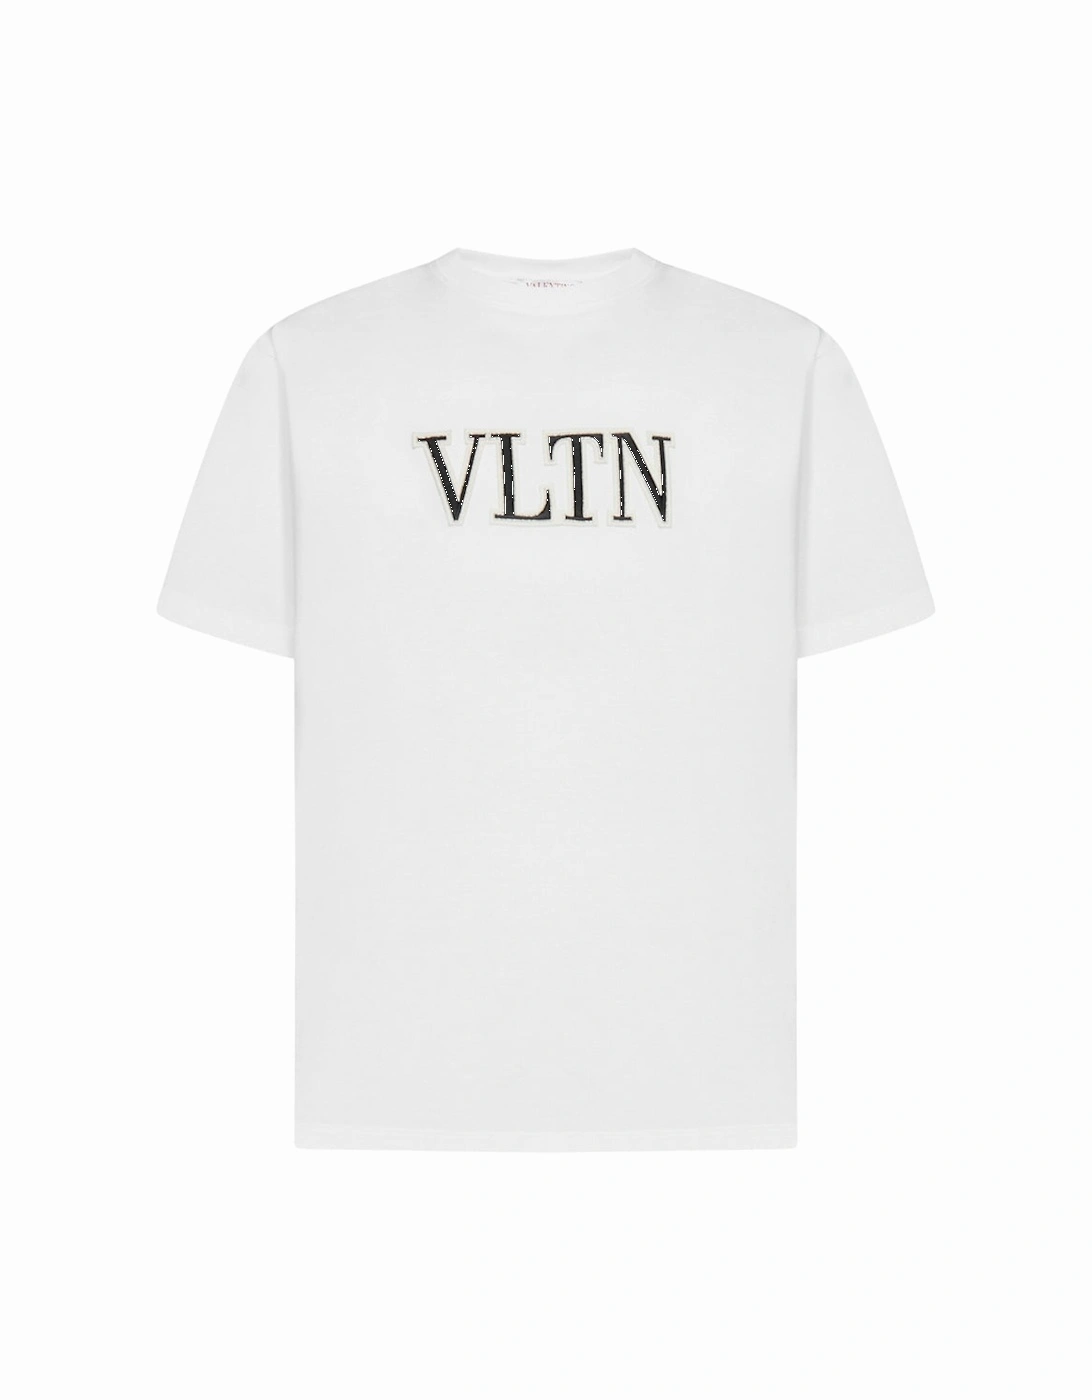 VLTN Embroidered White T-Shirt, 2 of 1